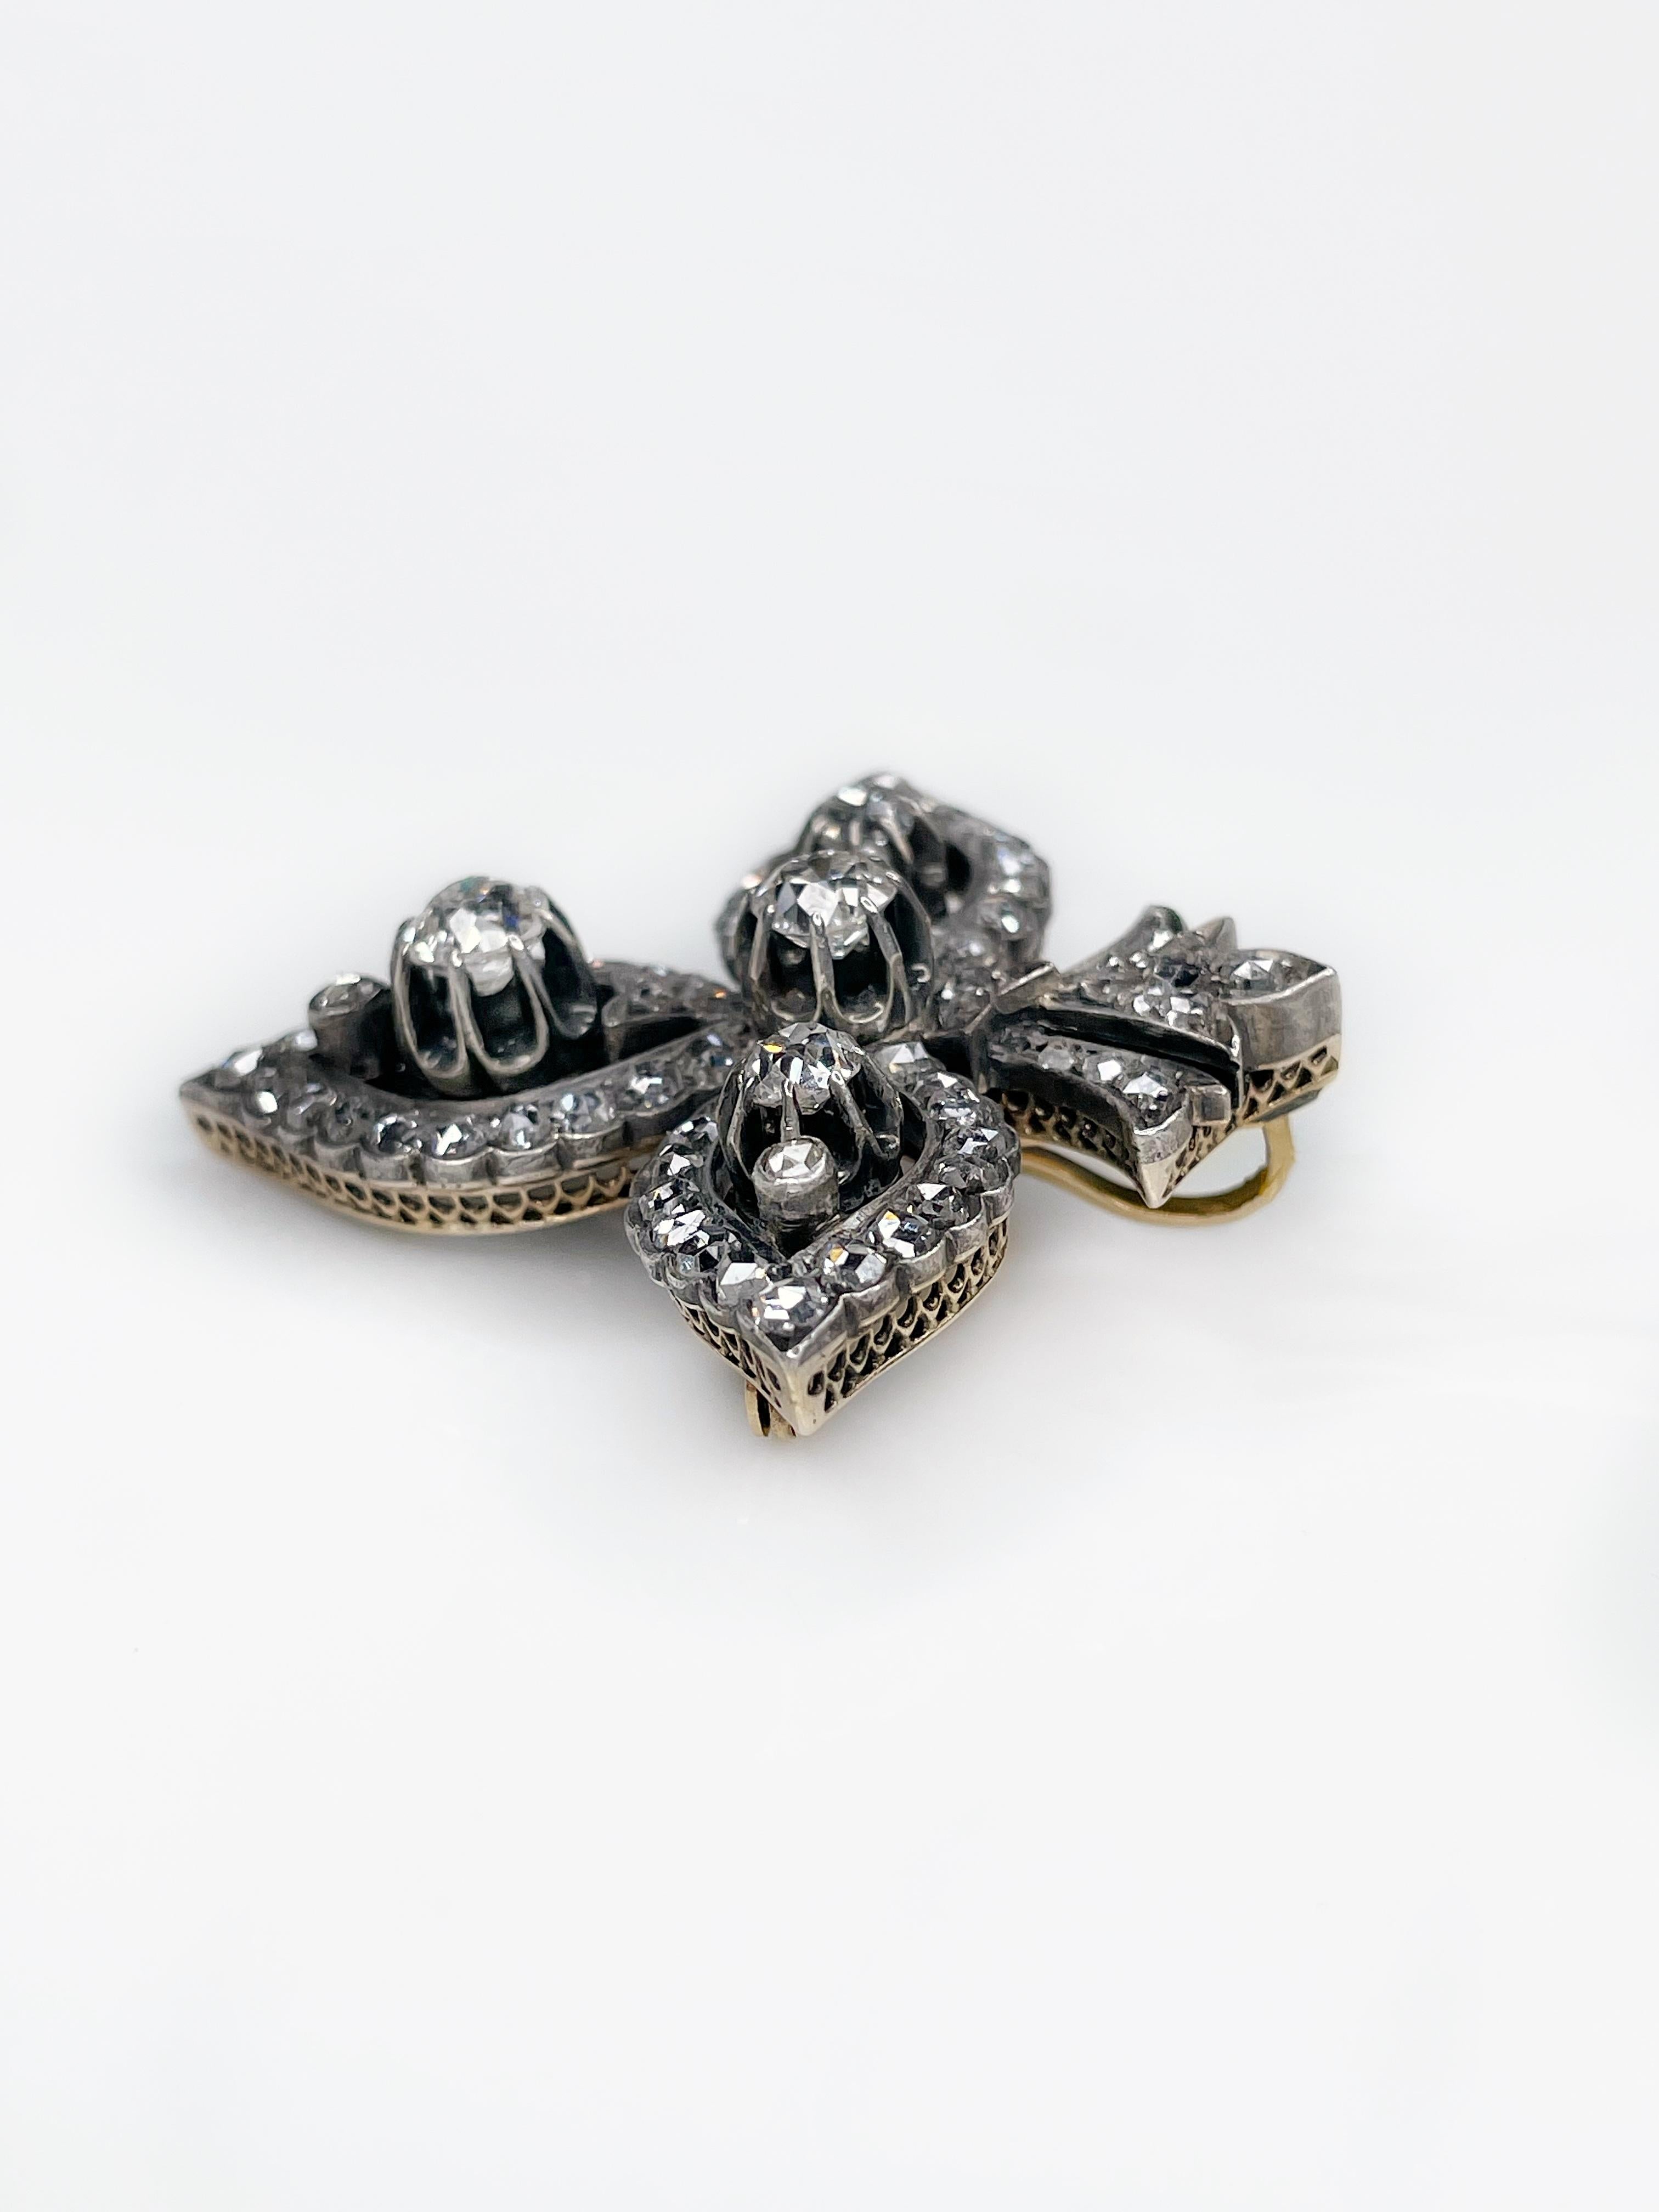 Antique 14K Gold “Fleur-de-lis” Diamond Brooch Pendant XIX Century 2